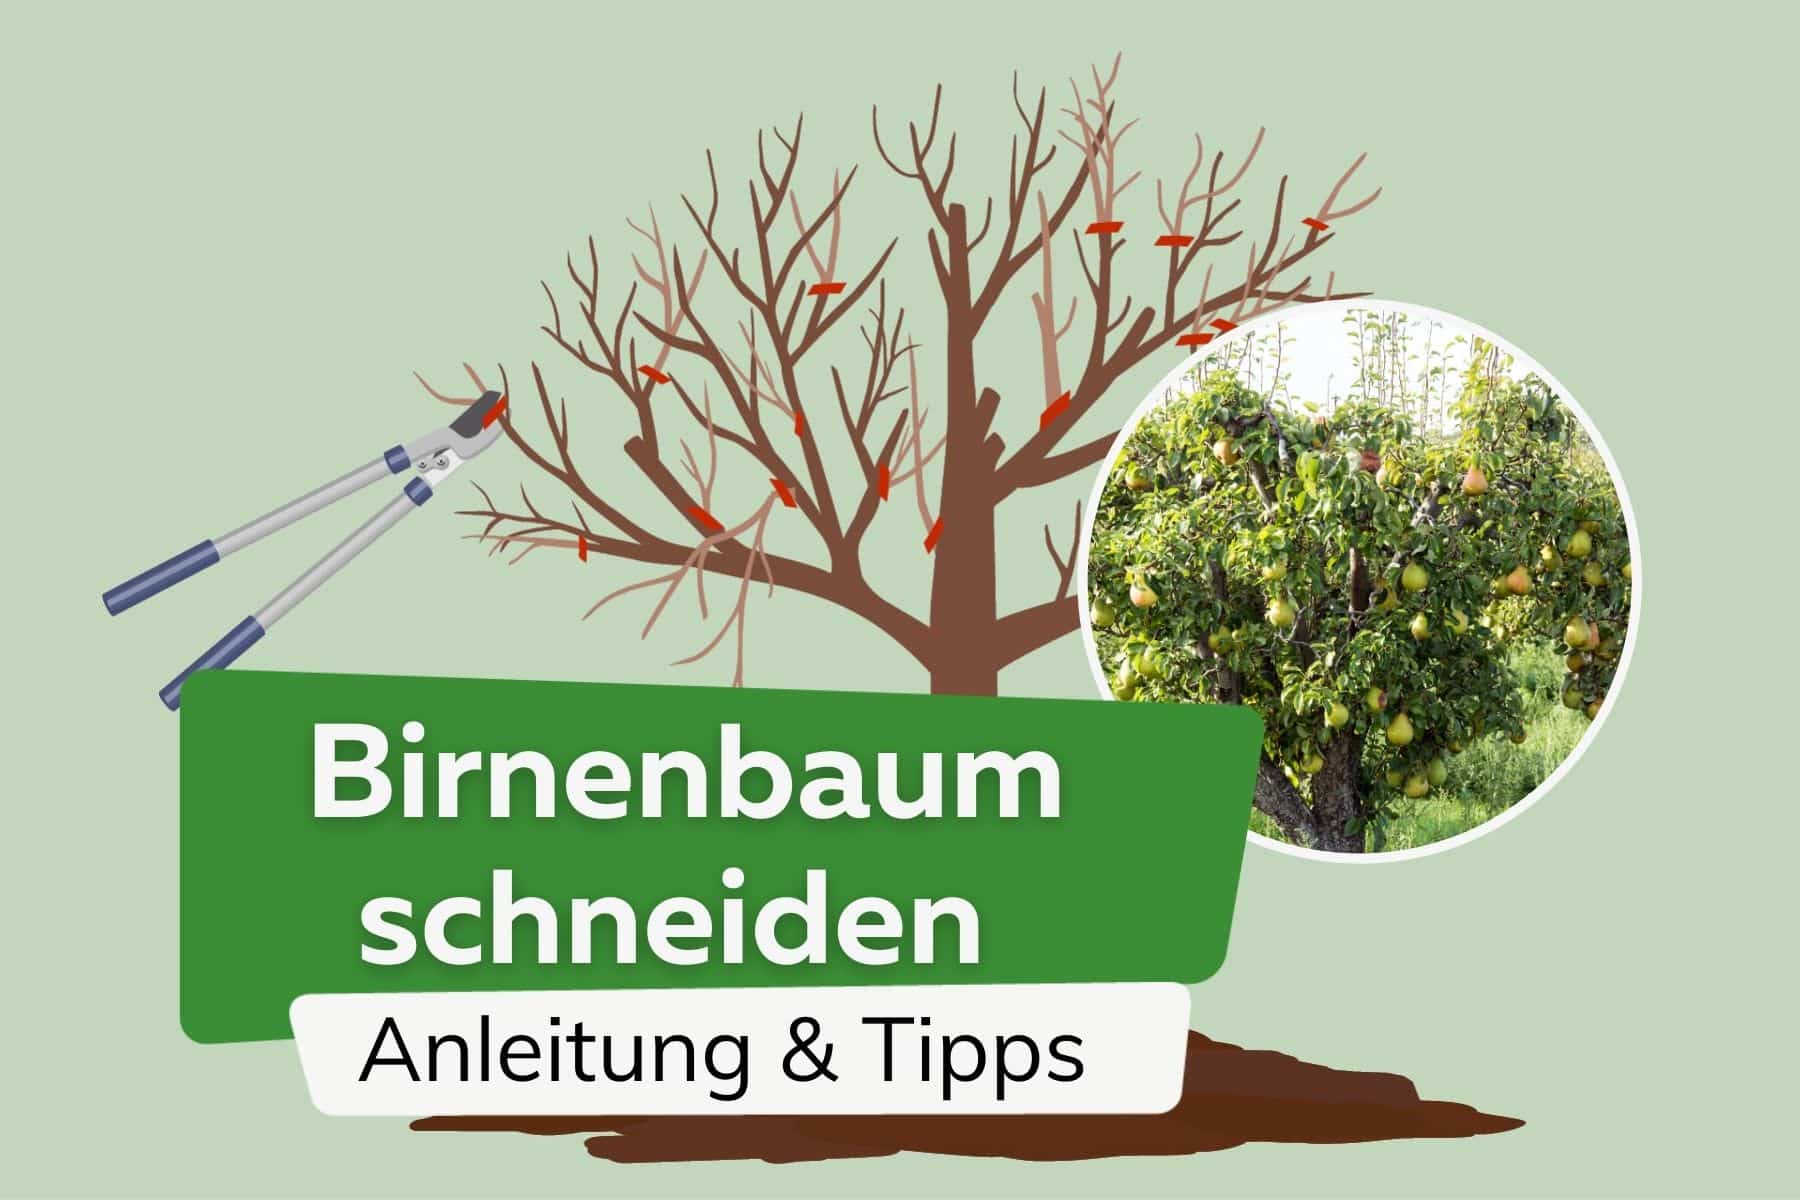 Birnbaum schneiden: Anleitung & Tipps